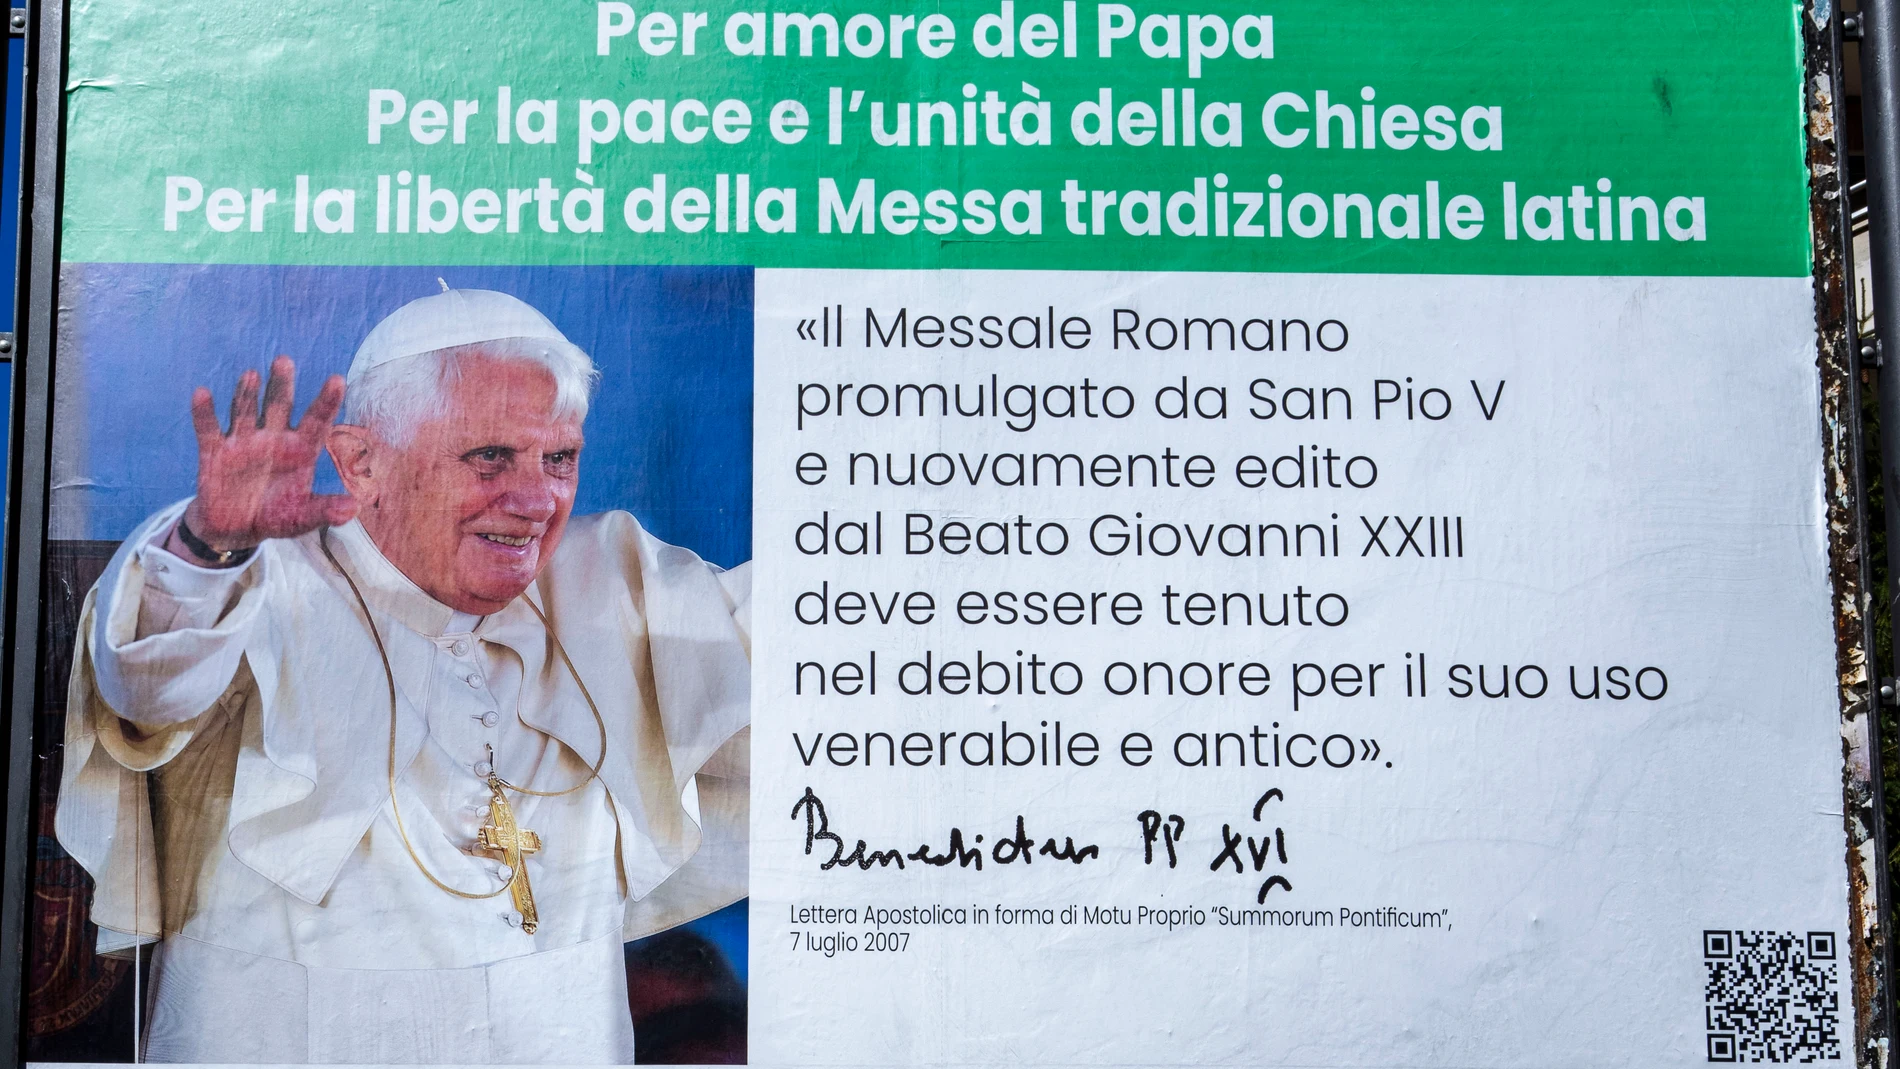 El Papa Benedicto XVI junto a una frase de una de sus cartas apostólicas de 2007